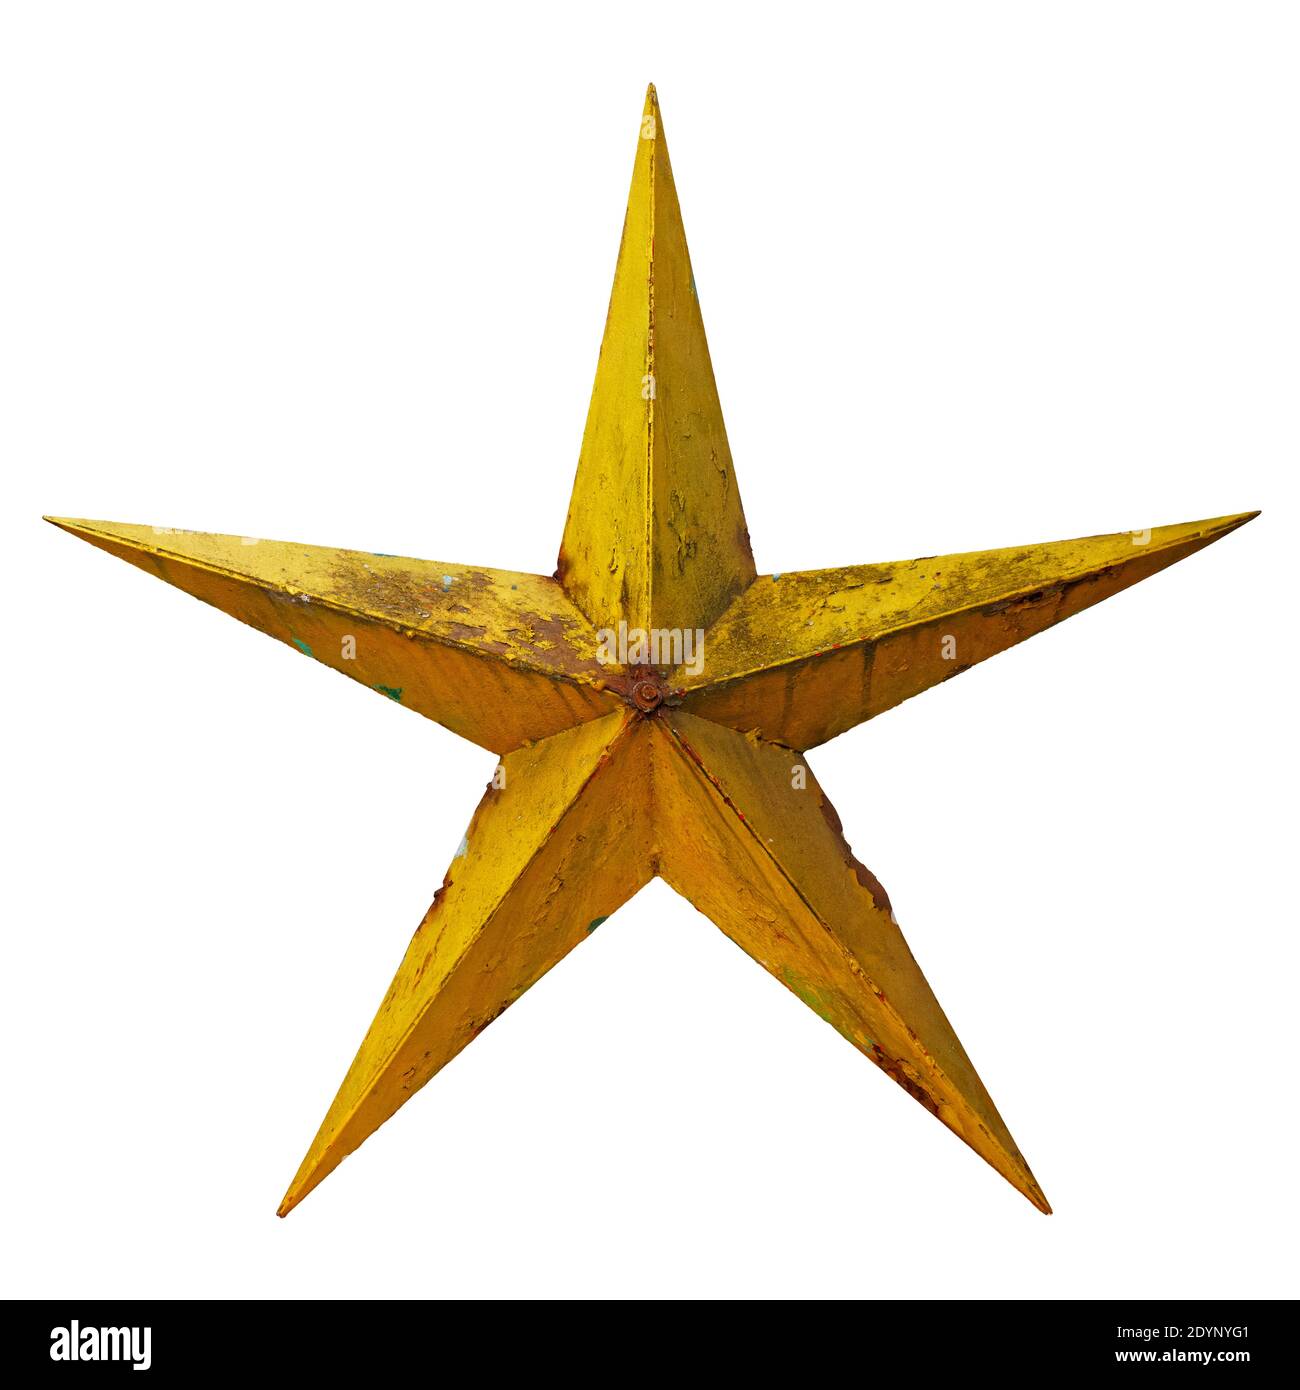 Molto vecchio shabby e arrugginito cinque stelle di metallo giallo, isolato su sfondo bianco Foto Stock